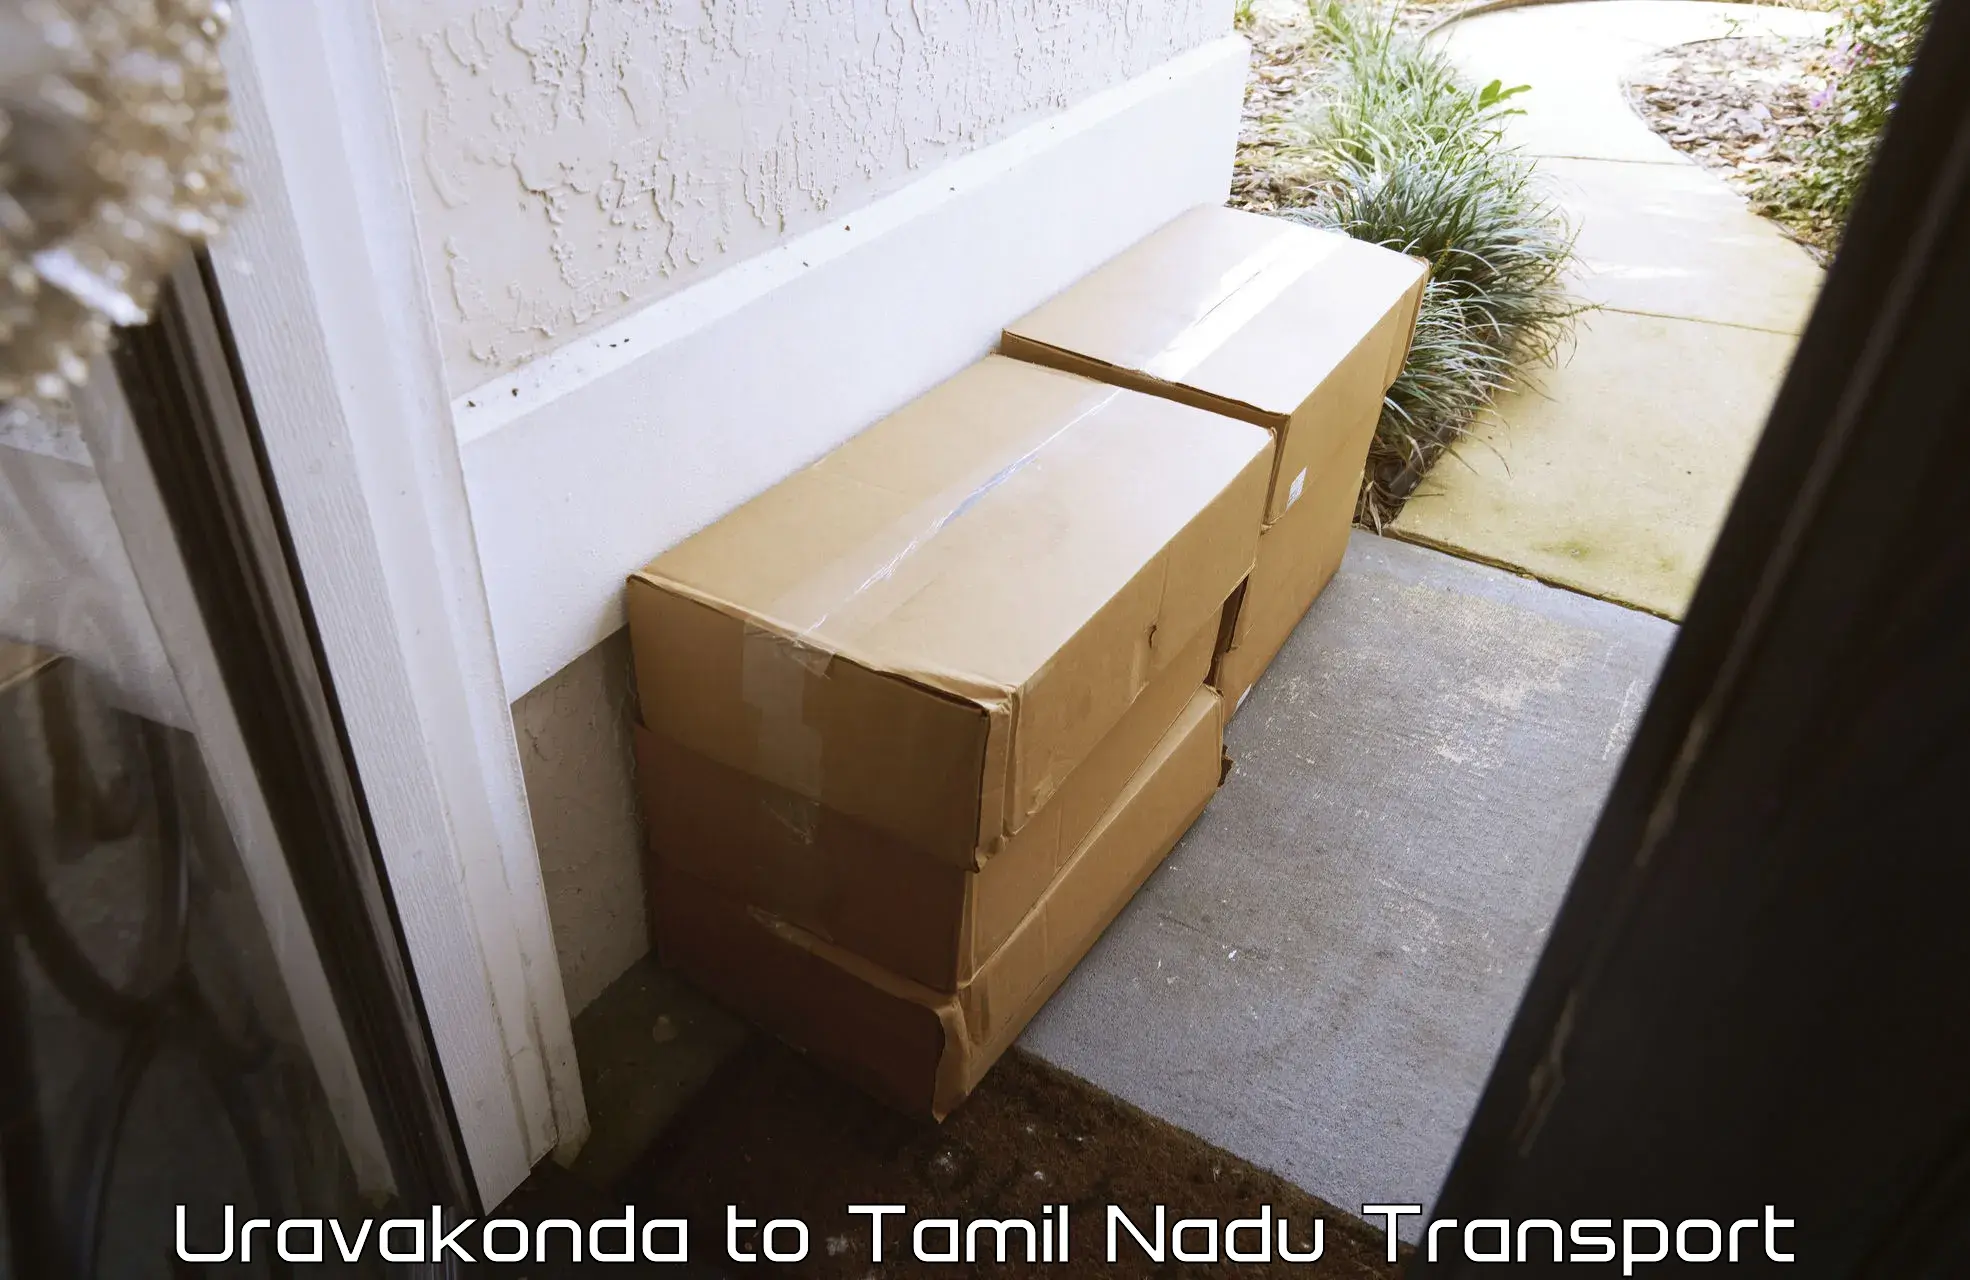 Goods delivery service Uravakonda to Avinashi